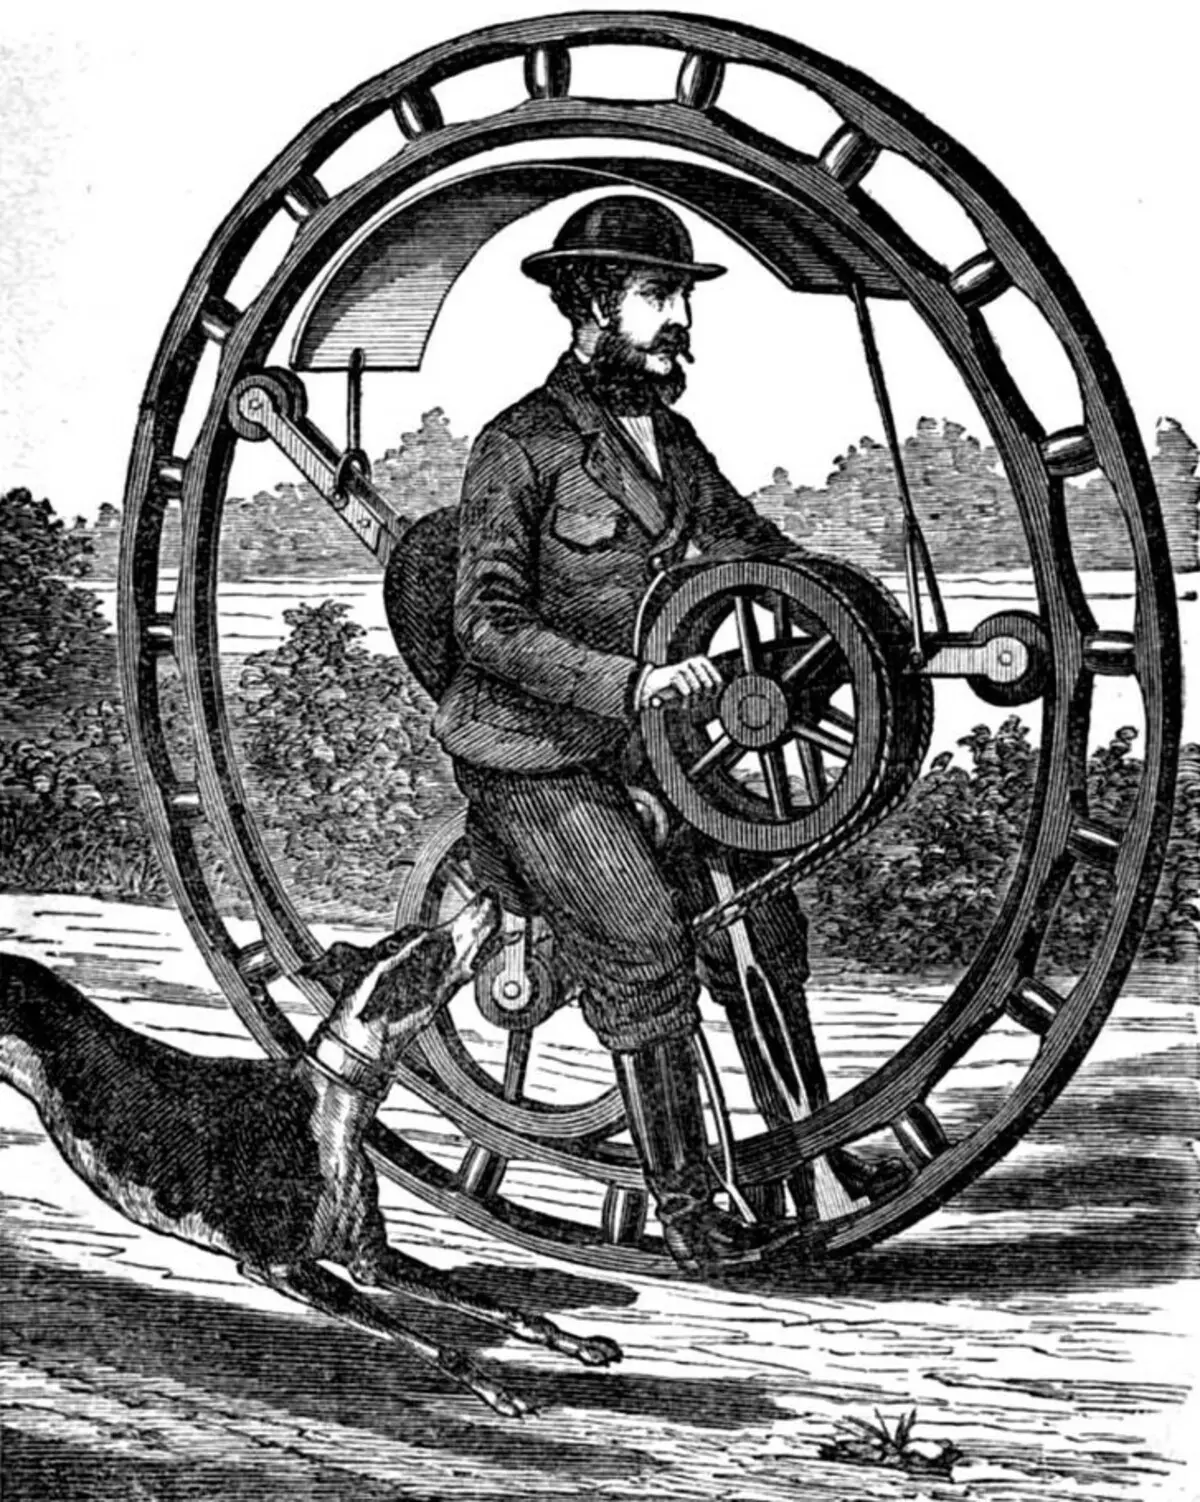 Monocycle: यूनिसाइकिल (एकल बाइक) का नाम क्या है? विद्युत मॉडल का अवलोकन। सवारी करने के लिए कैसे सीखें? 26188_11